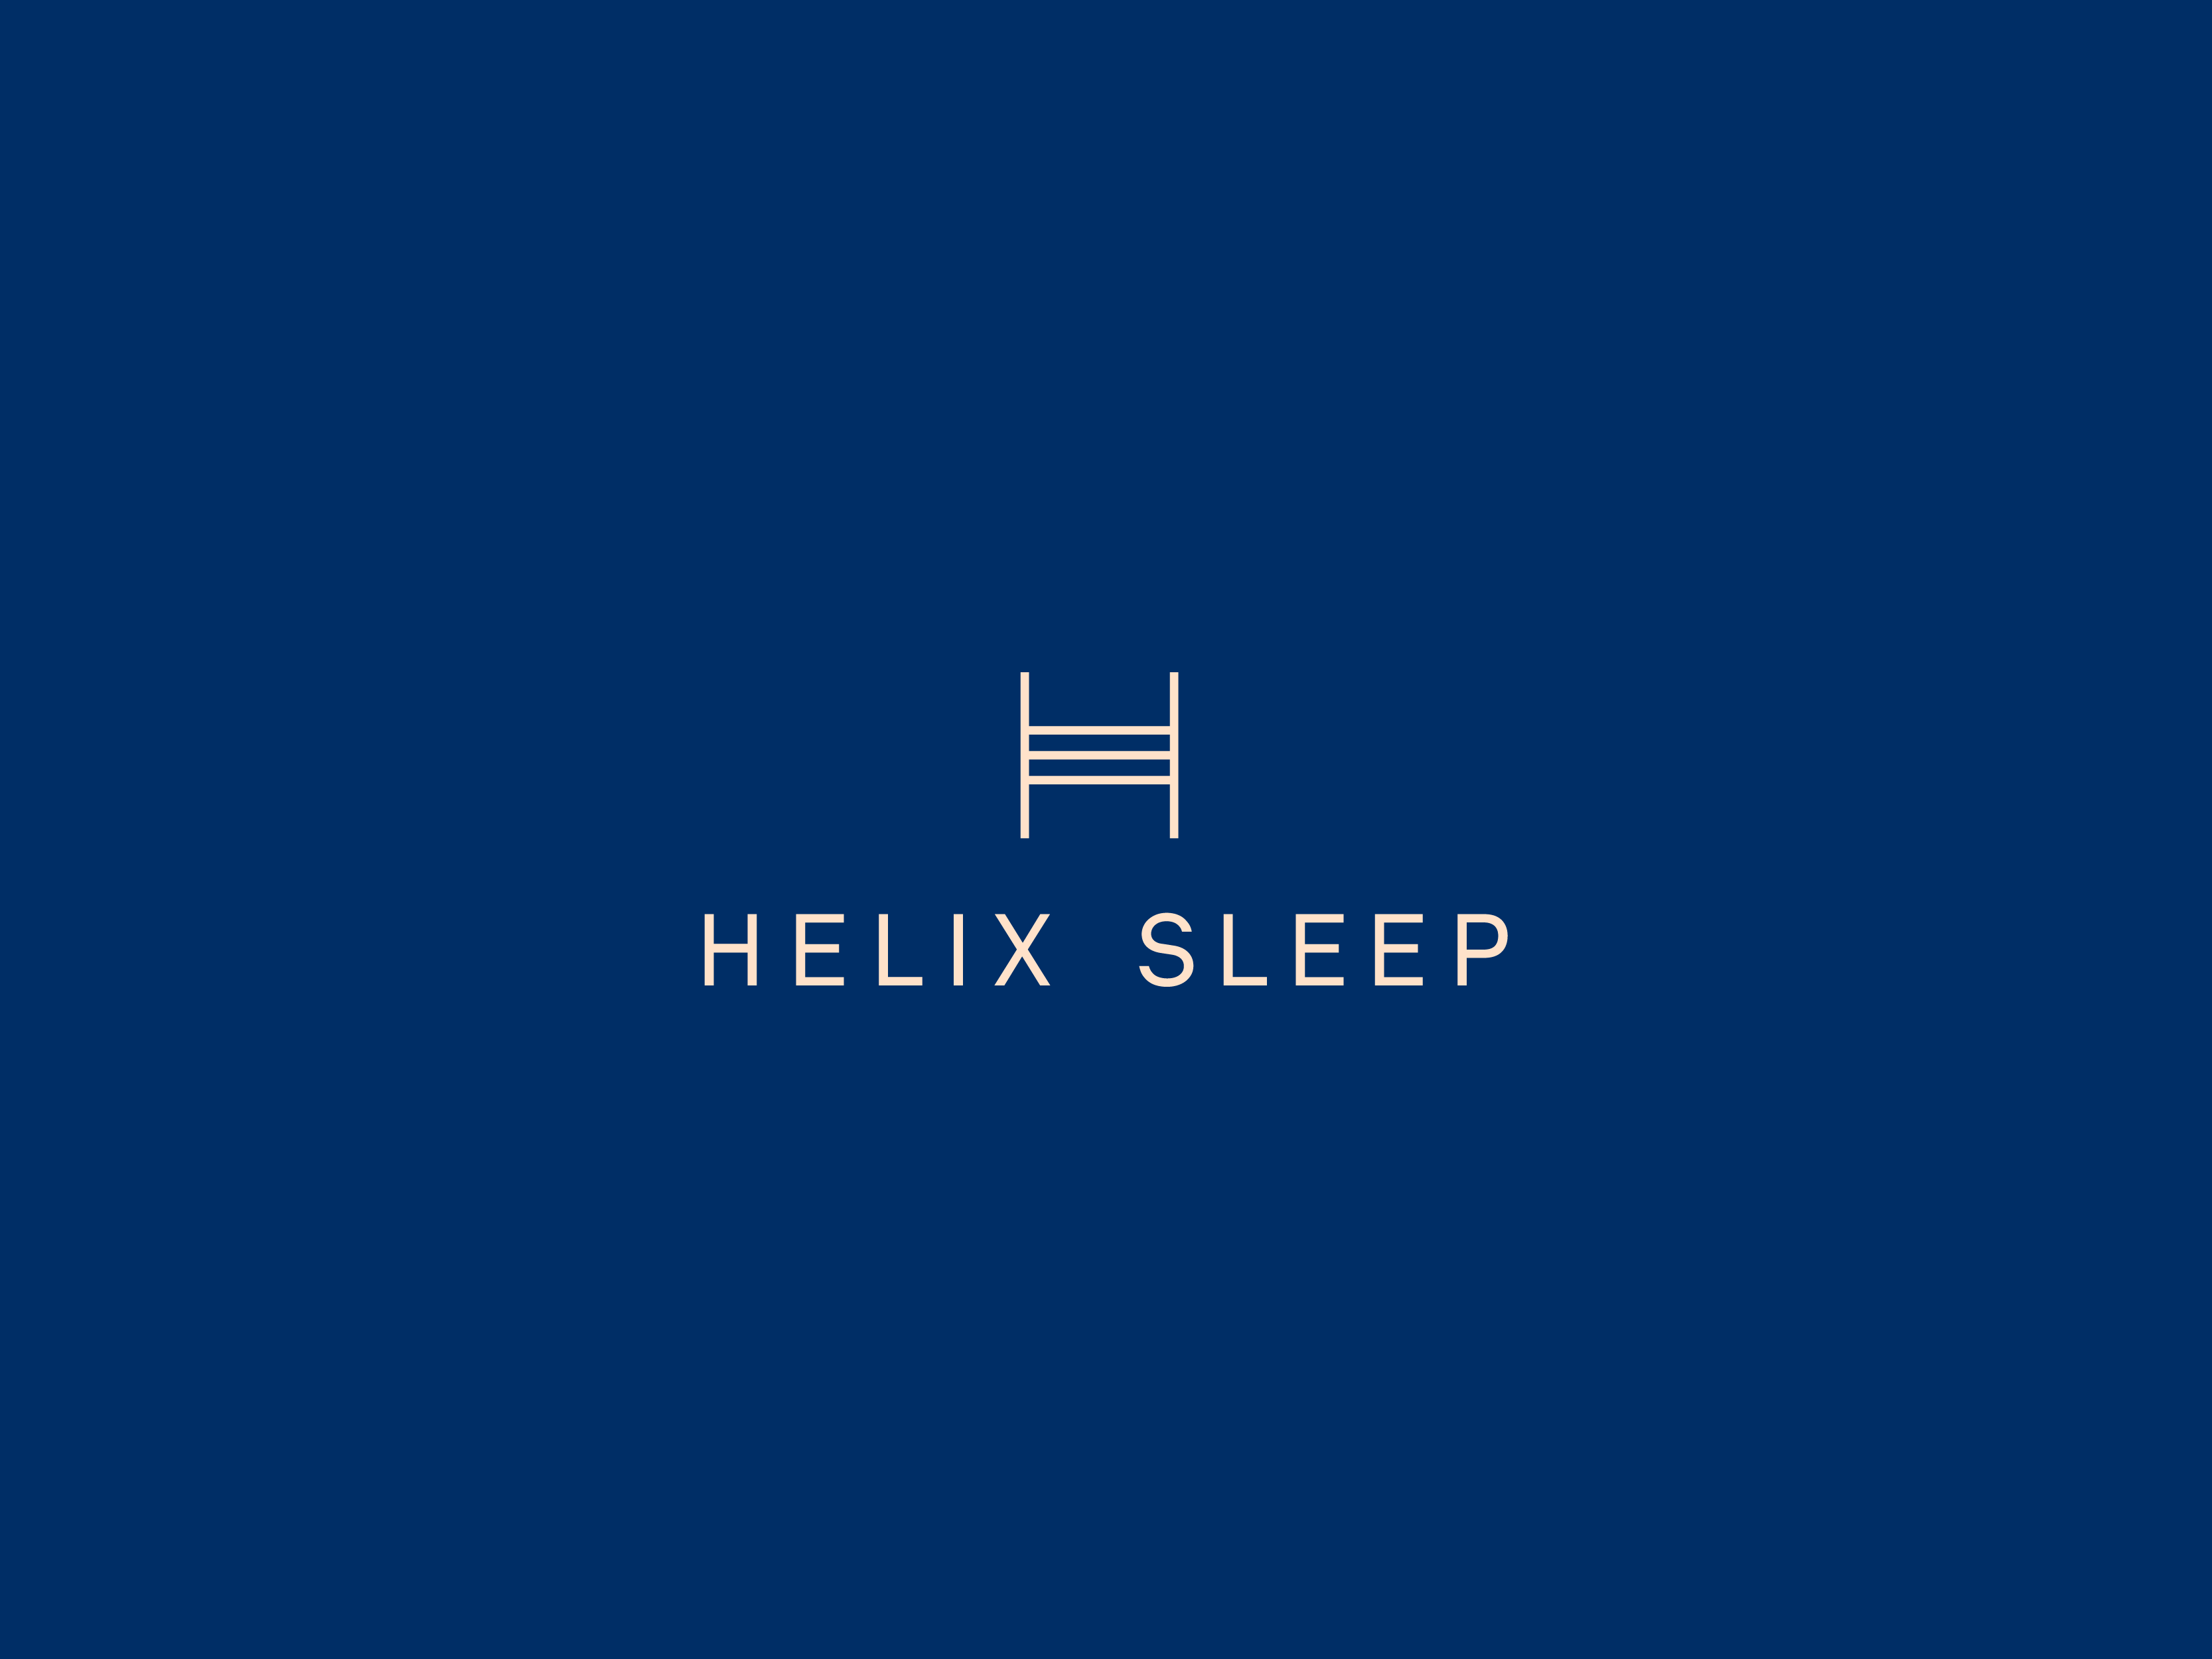 Helix Sleep